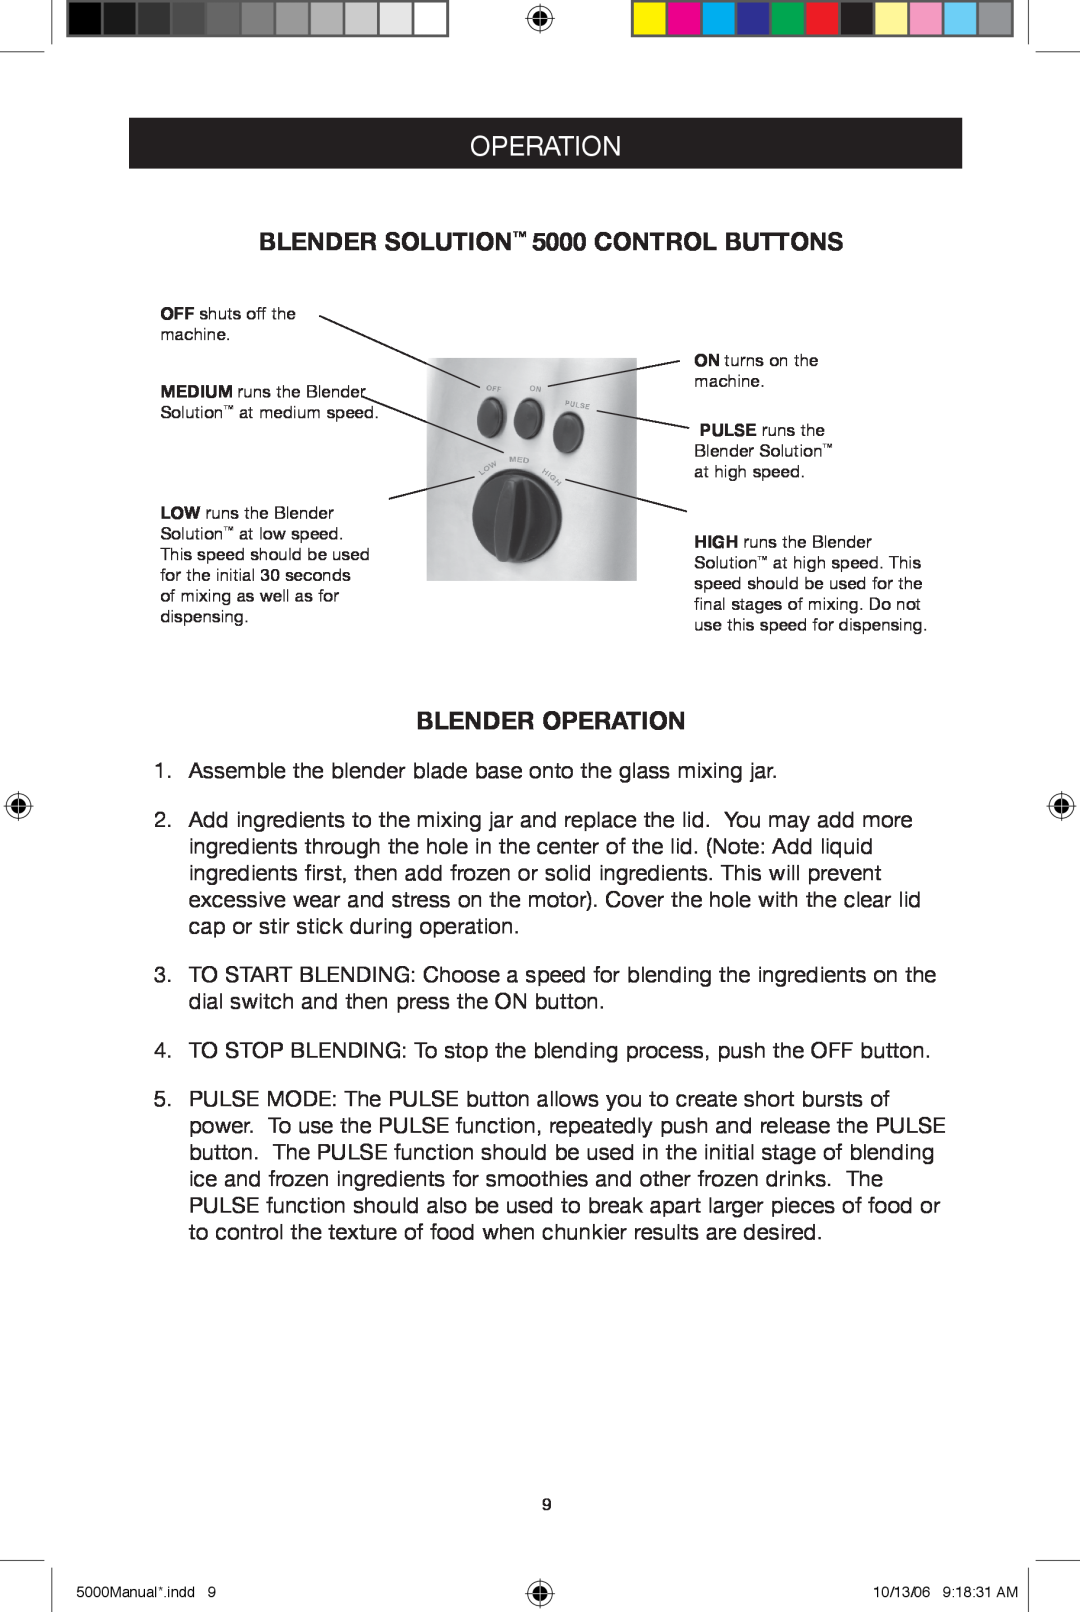 Black & Decker 5500 manuel dutilisation BLENDER SOLUTION 5000 CONTROL BUTTONS, Blender Operation 